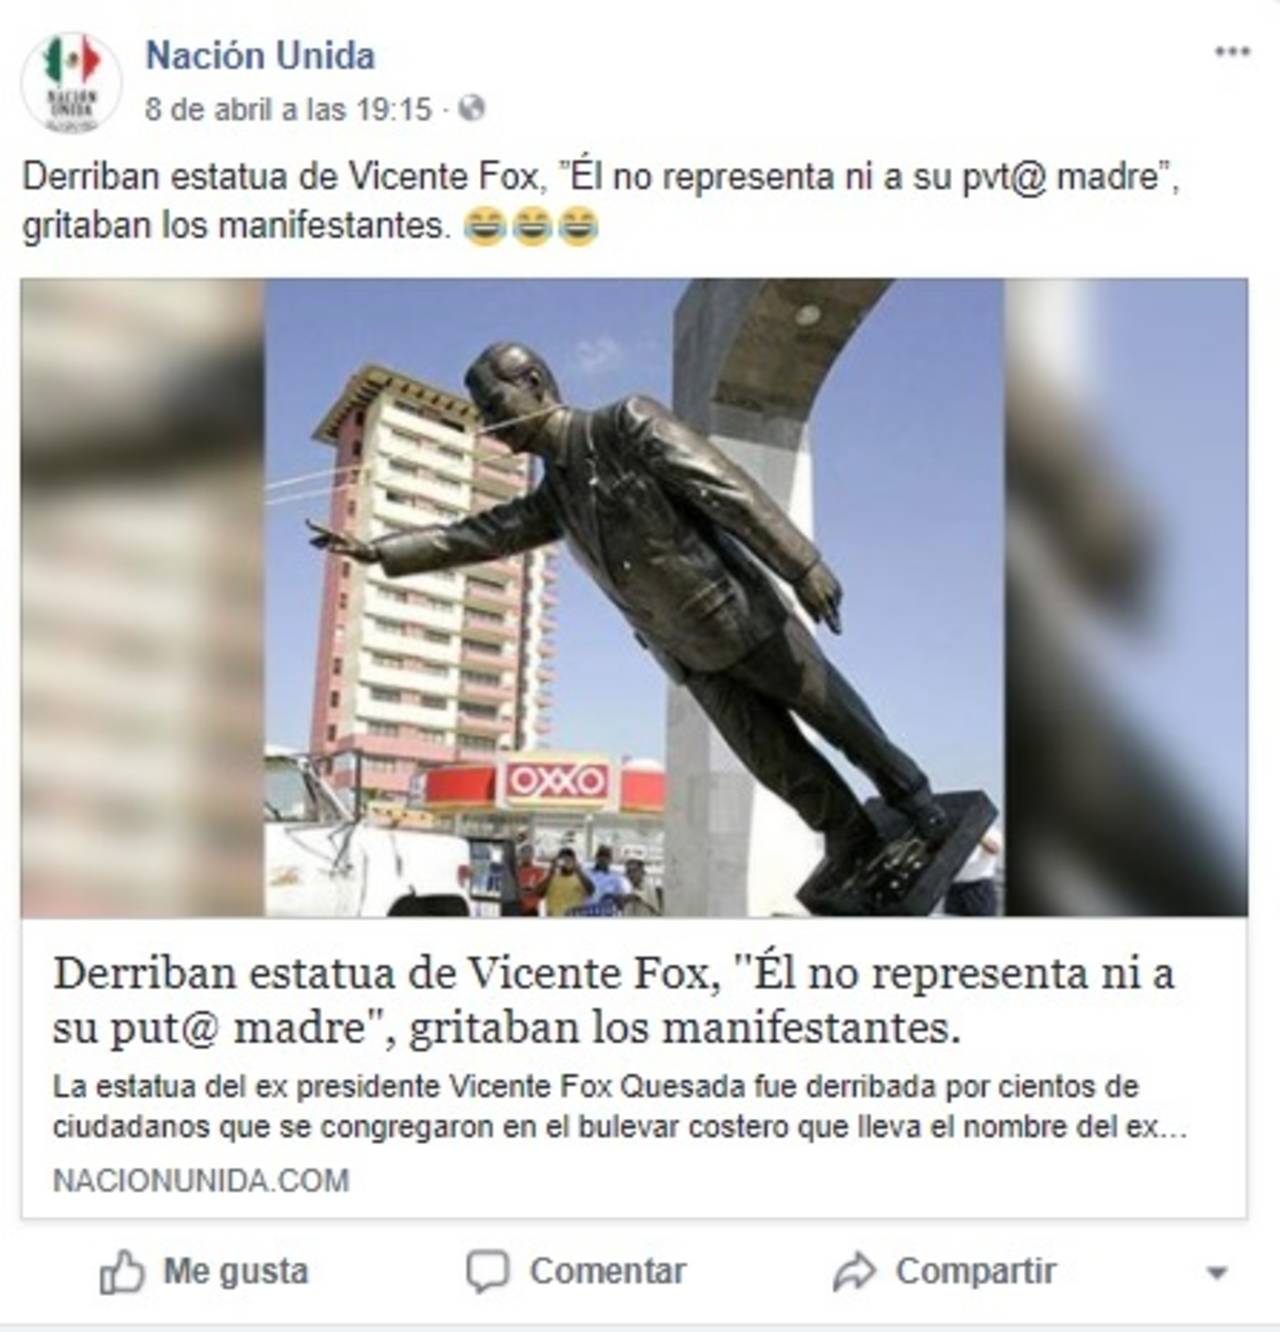 Aclaración. Sí se derribó una estatua del expresidente Vicente Fox, pero  ocurrió en octubre de 2007.